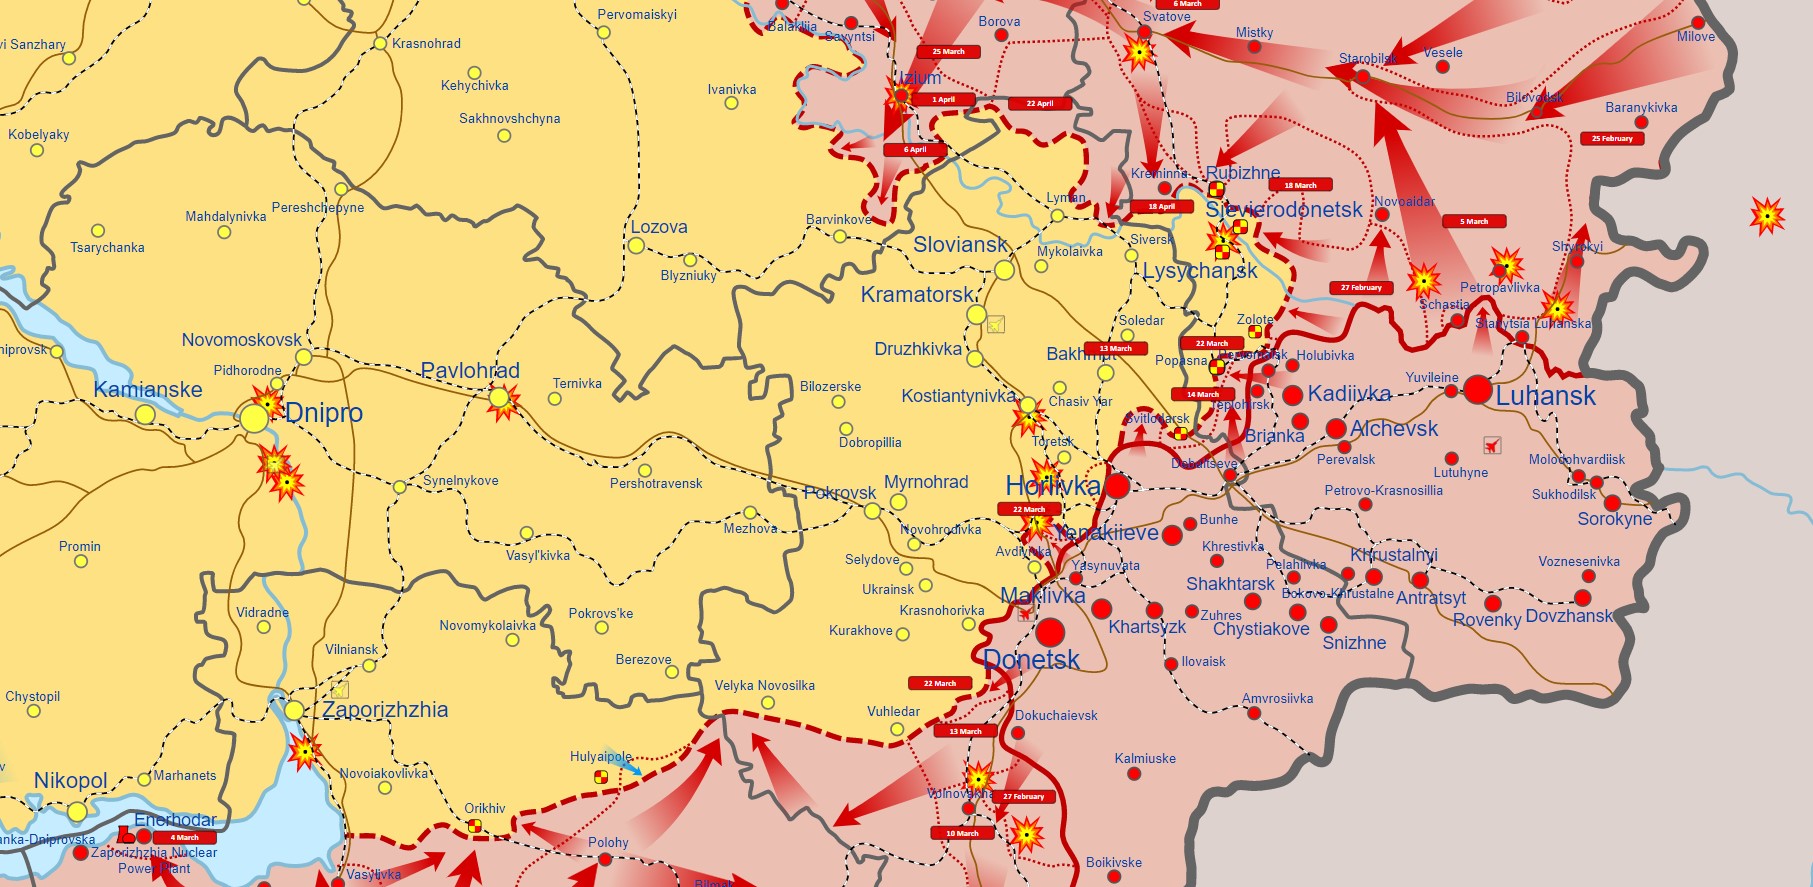 Вблизи границы c Харьковской областью россияне сосредоточили до 40 вертолетов – Генштаб